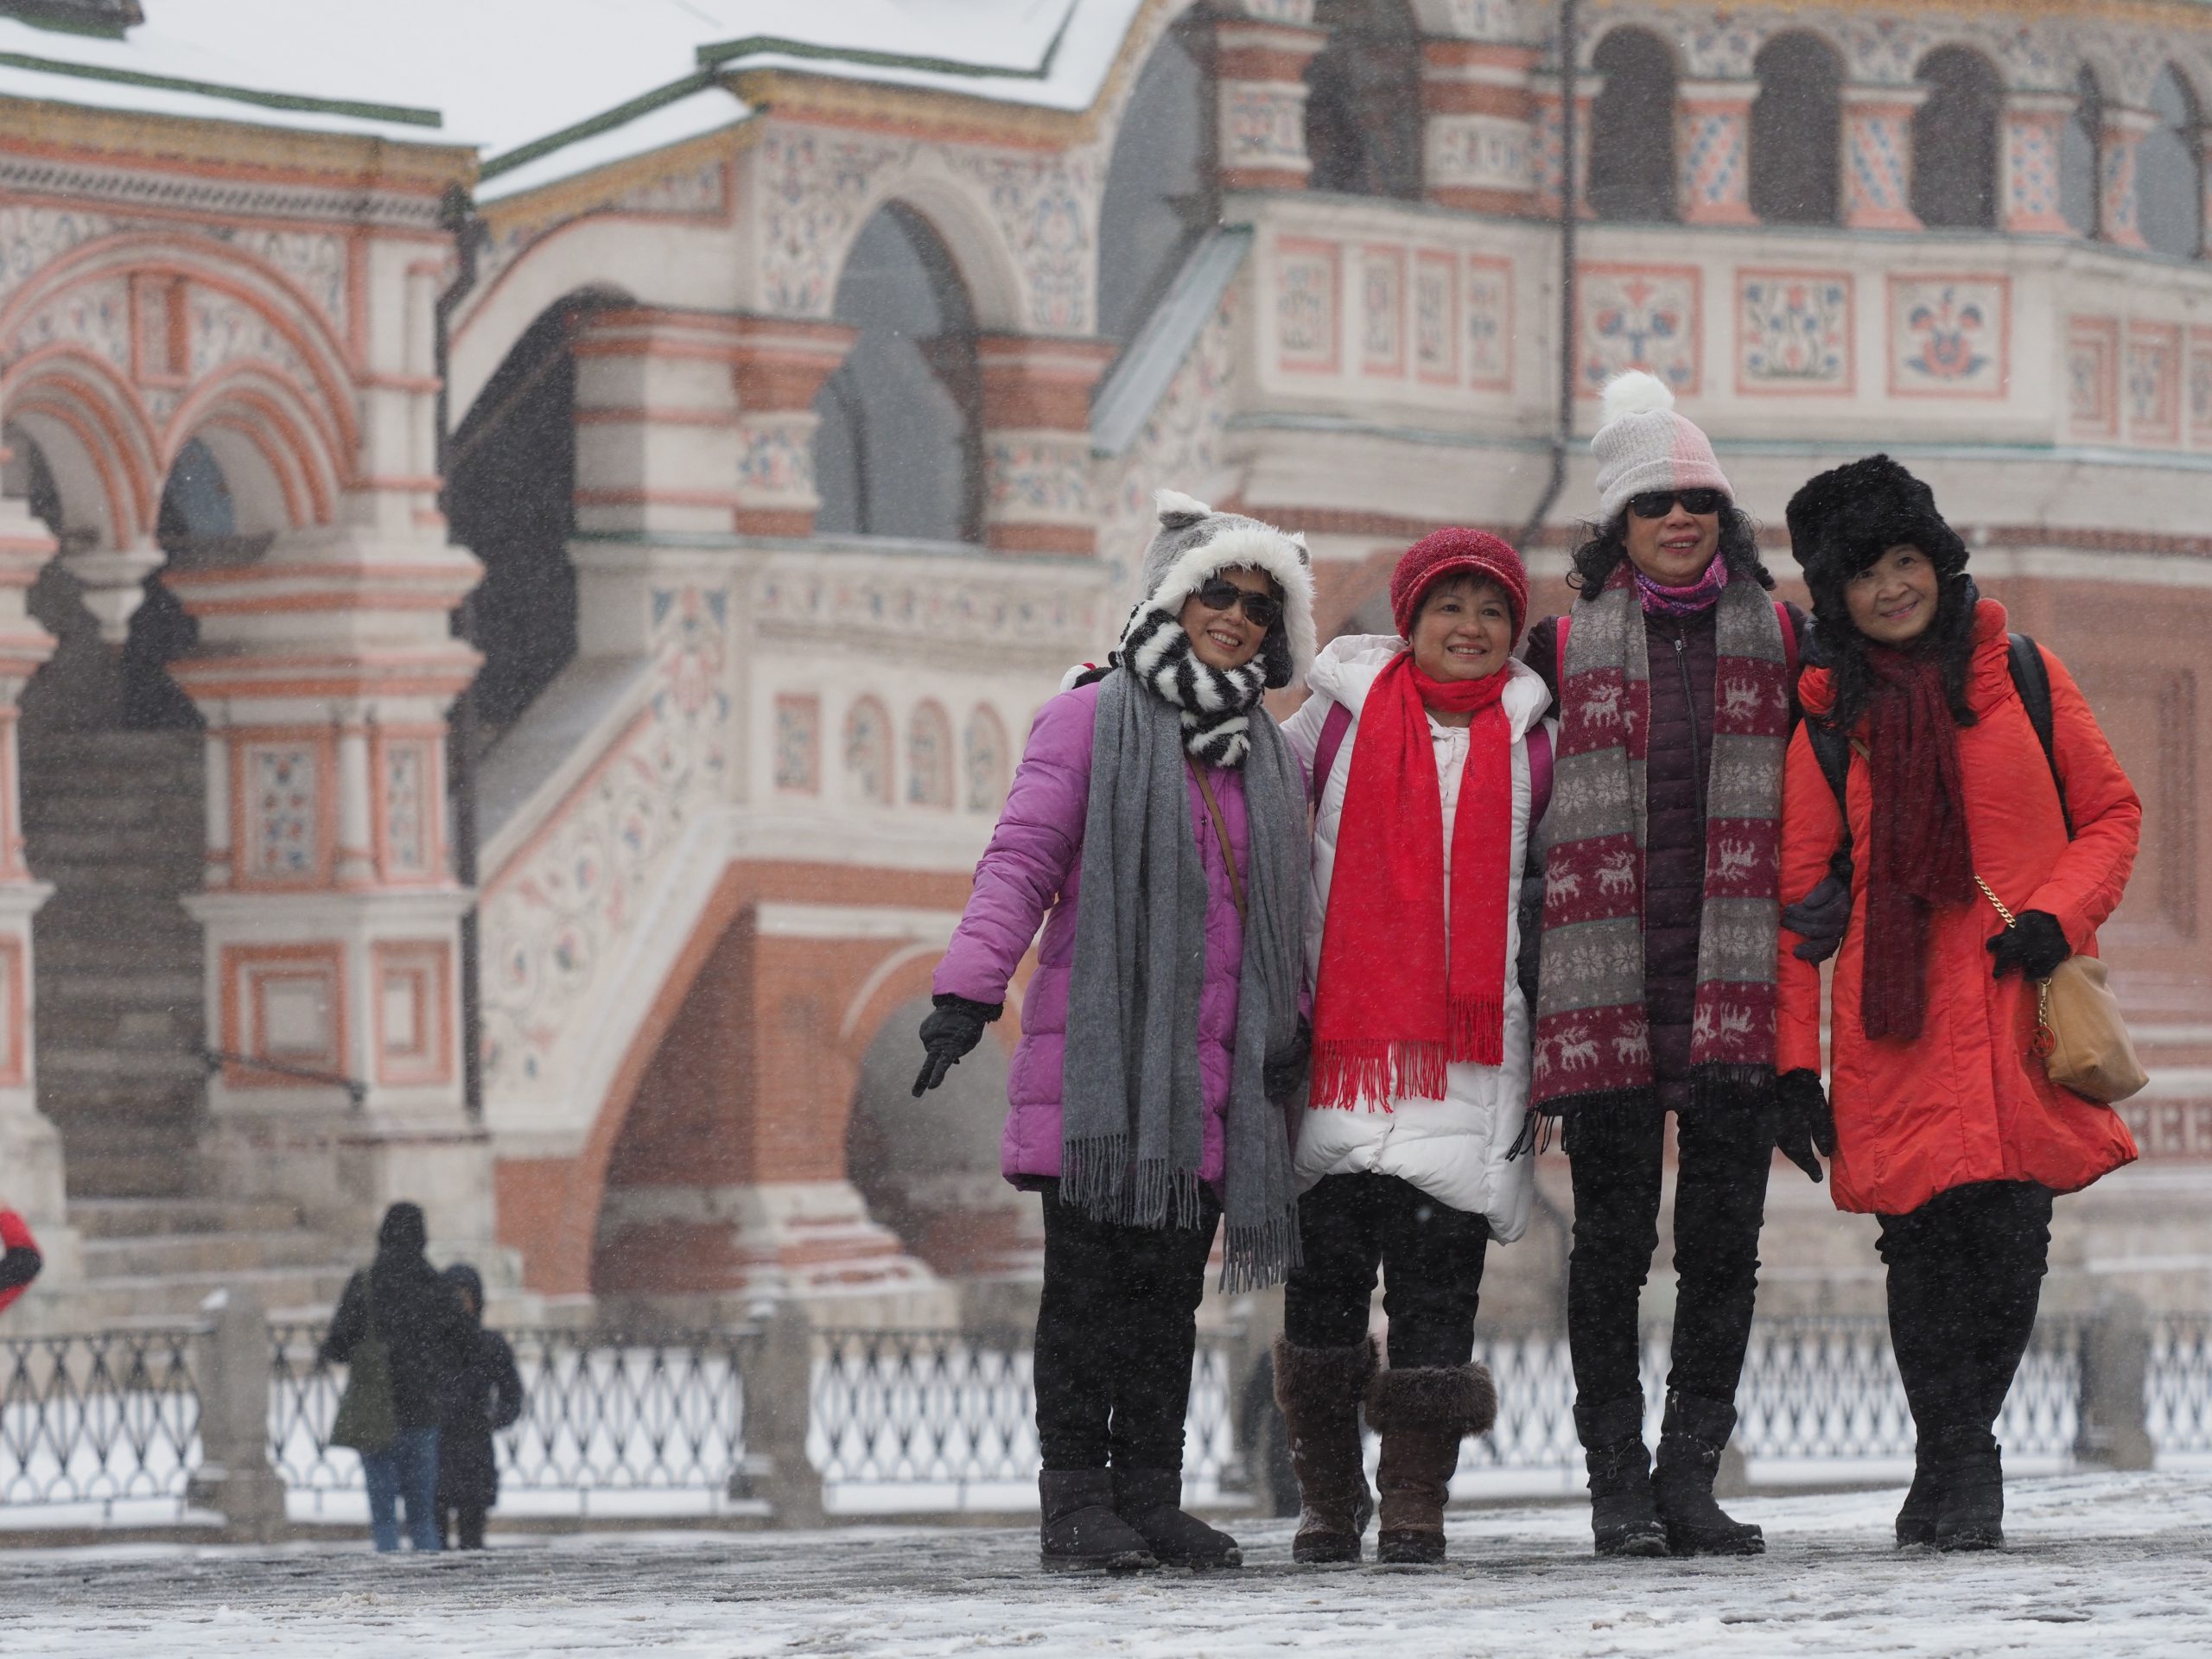 Туристический журнал Russpass опубликовал список маршрутов на зимние праздники по России